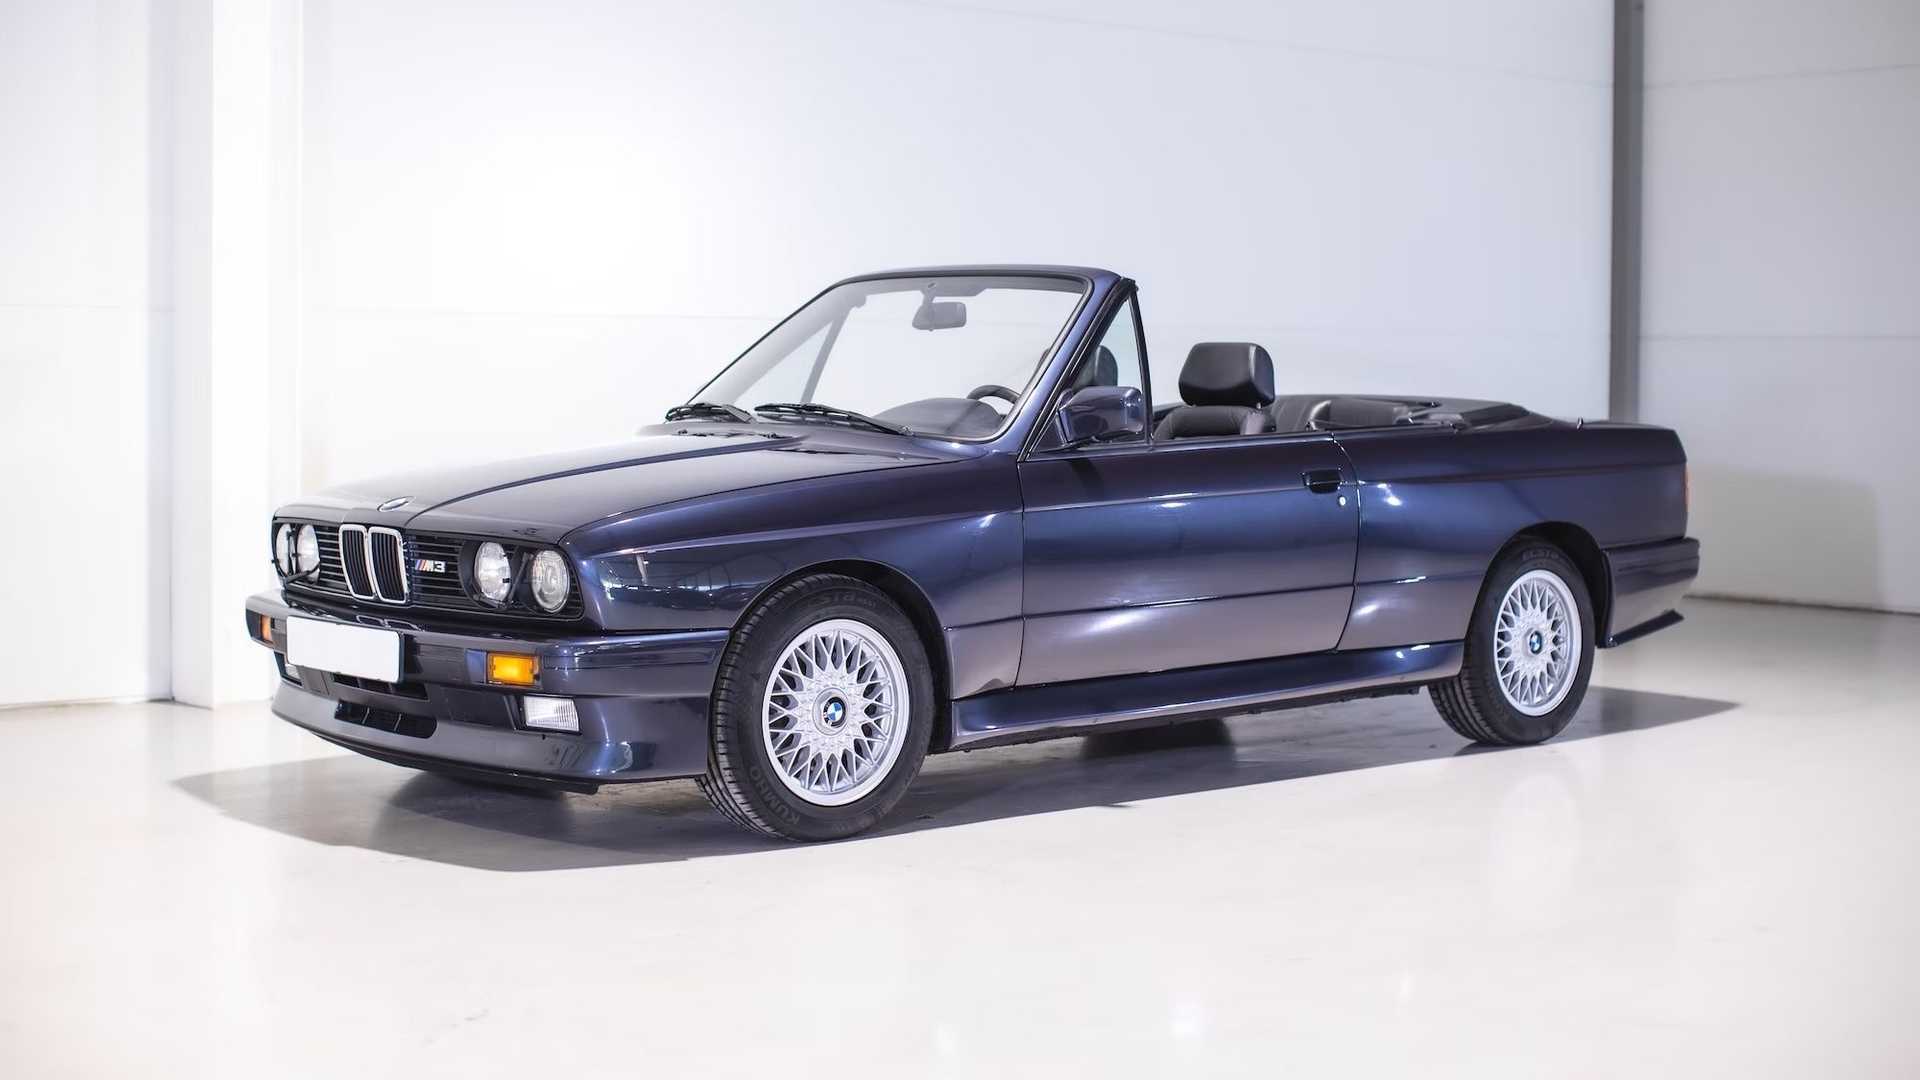 Une rare BMW M3 décapotable de 1989 vendue pour plus de 101 000 dollars lors d'une vente aux enchères